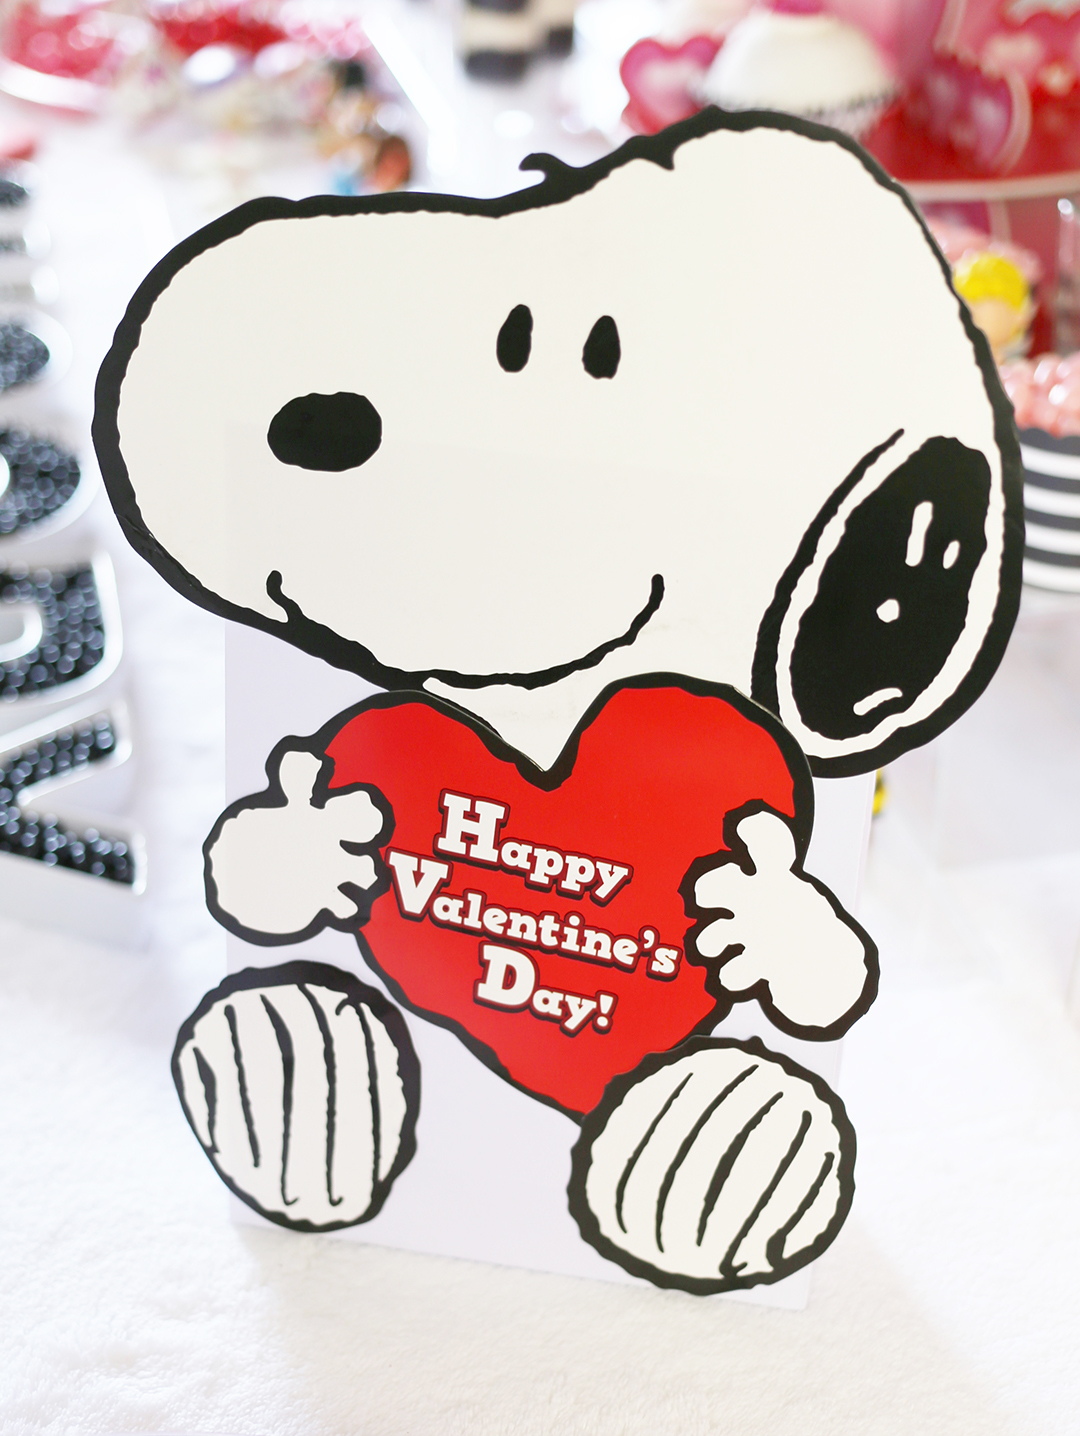 Funny peanuts Valentine's heart tray